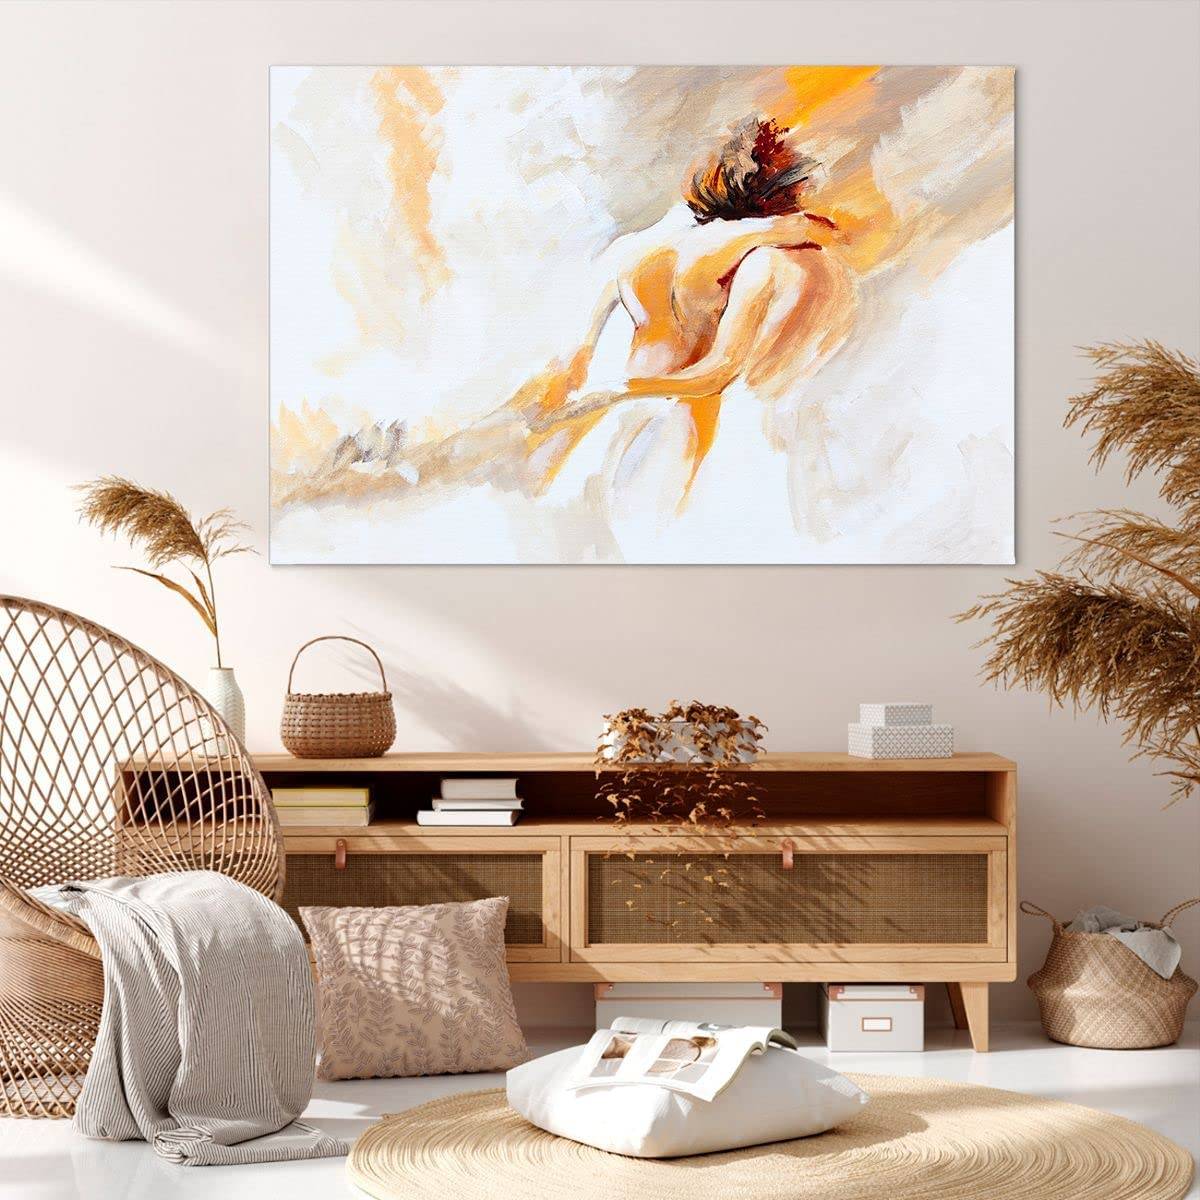 Negar hélice Implementar 10 cuadros de Amazon que quedan genial en la pared del sofá